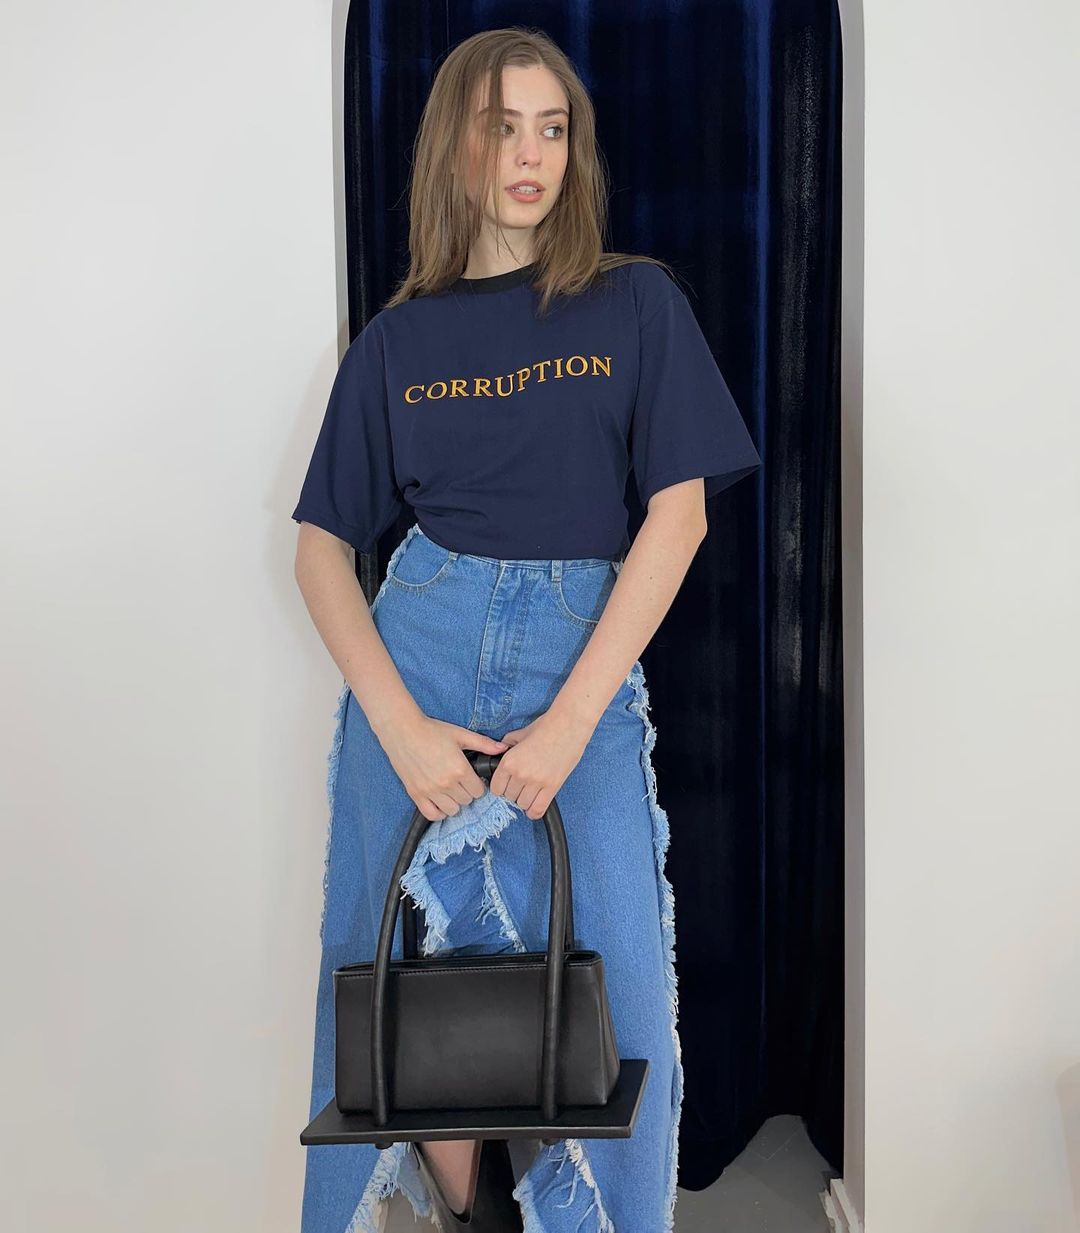 Український бренд Kseniaschnaider оголосив про розіграш сумки